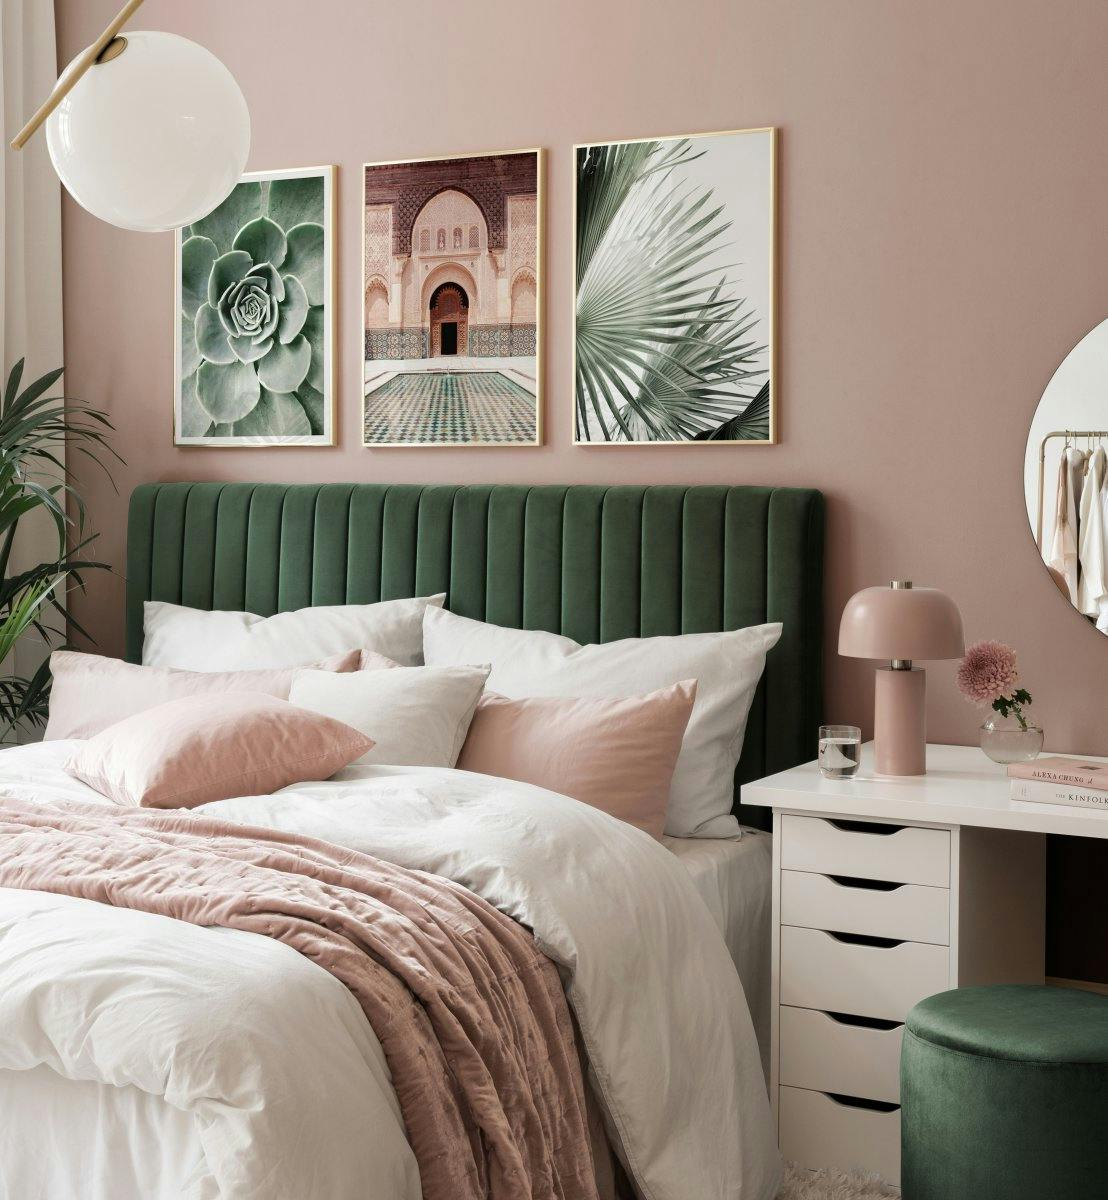 Foto's van bladeren en architectuur in groen en beige voor slaapkamer